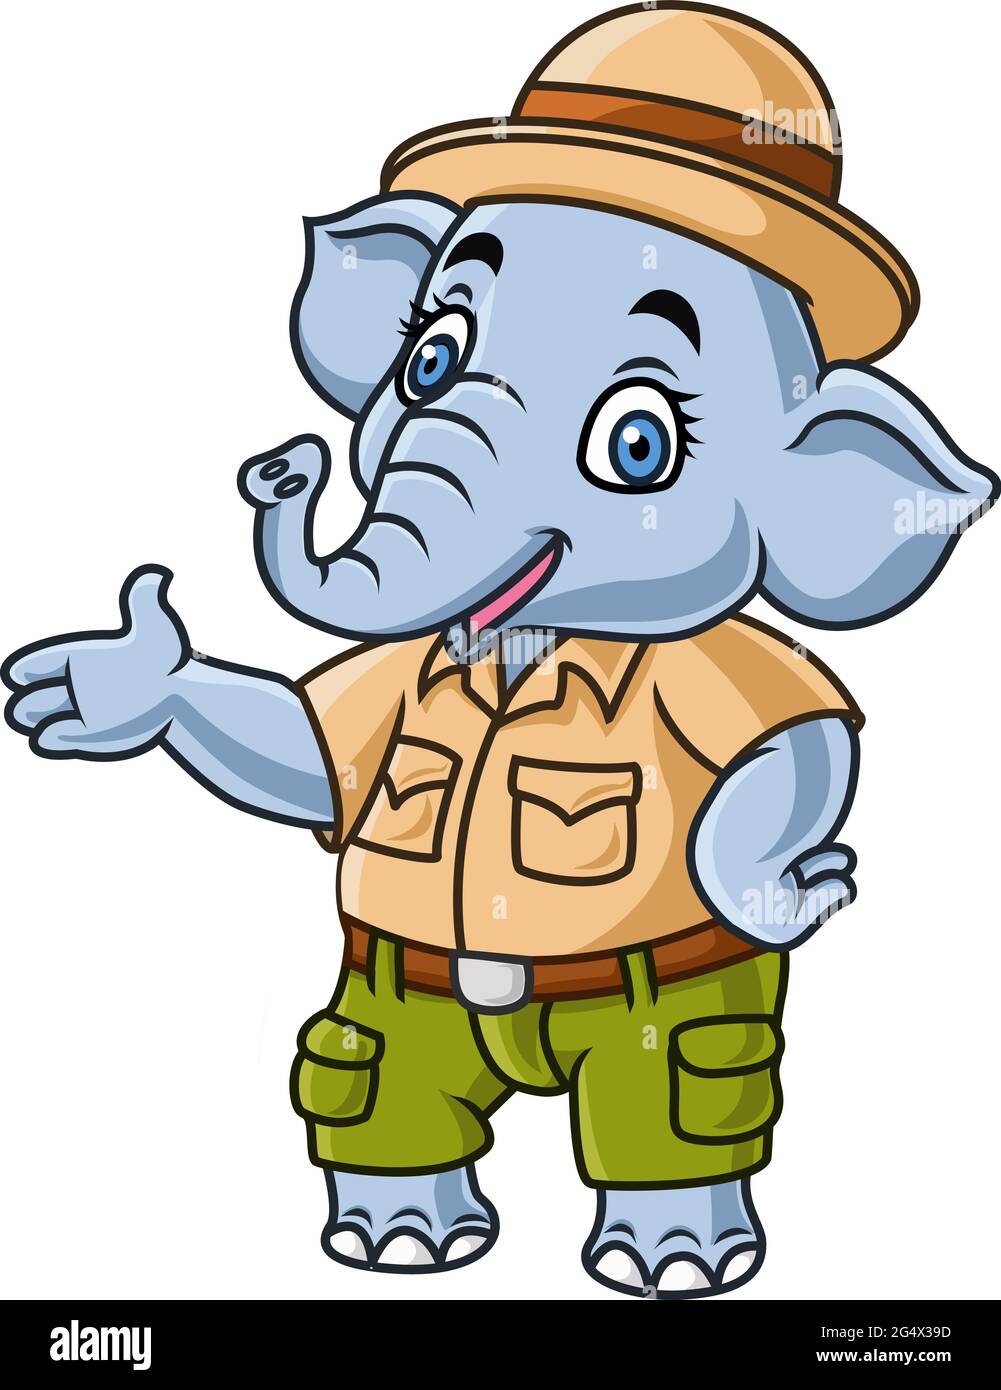 Dessin animé mignon éléphant portant le costume de safari Illustration de Vecteur